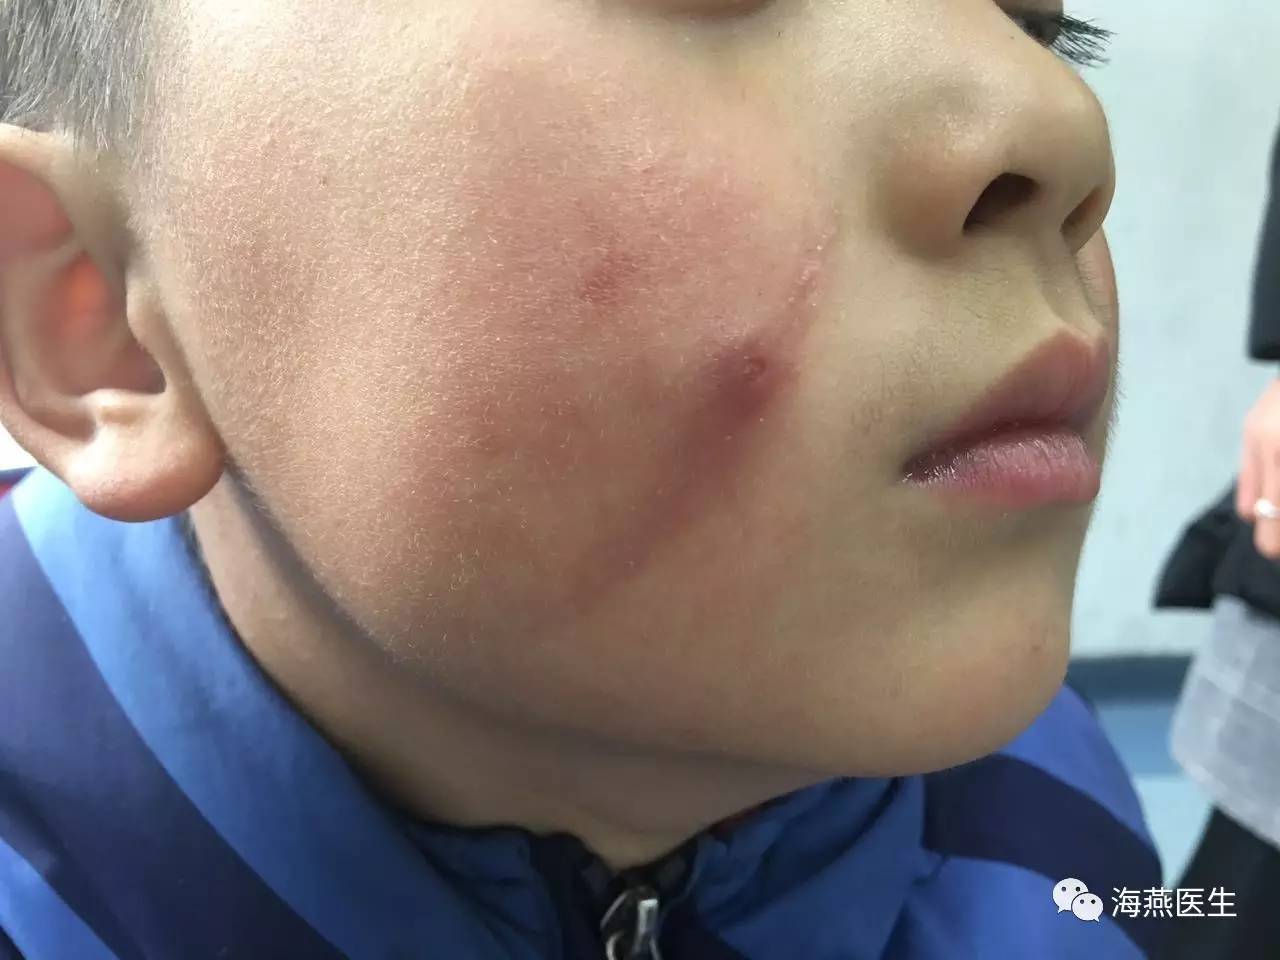 医院故事|孩子的脸为啥肿了?